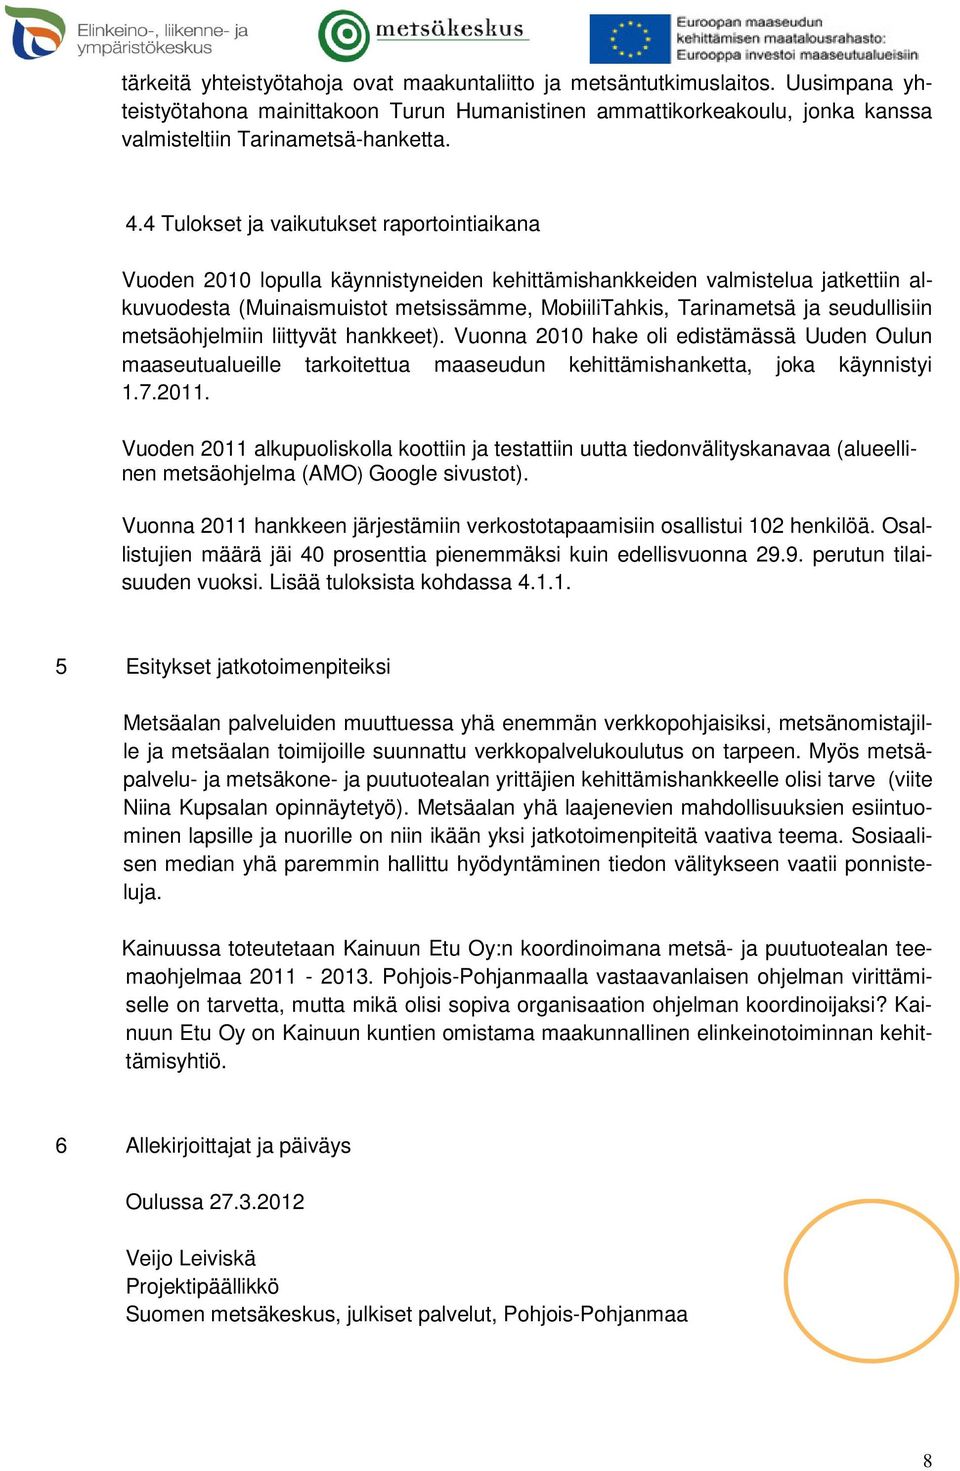 seudullisiin metsäohjelmiin liittyvät hankkeet). Vuonna 2010 hake oli edistämässä Uuden Oulun maaseutualueille tarkoitettua maaseudun kehittämishanketta, joka käynnistyi 1.7.2011.